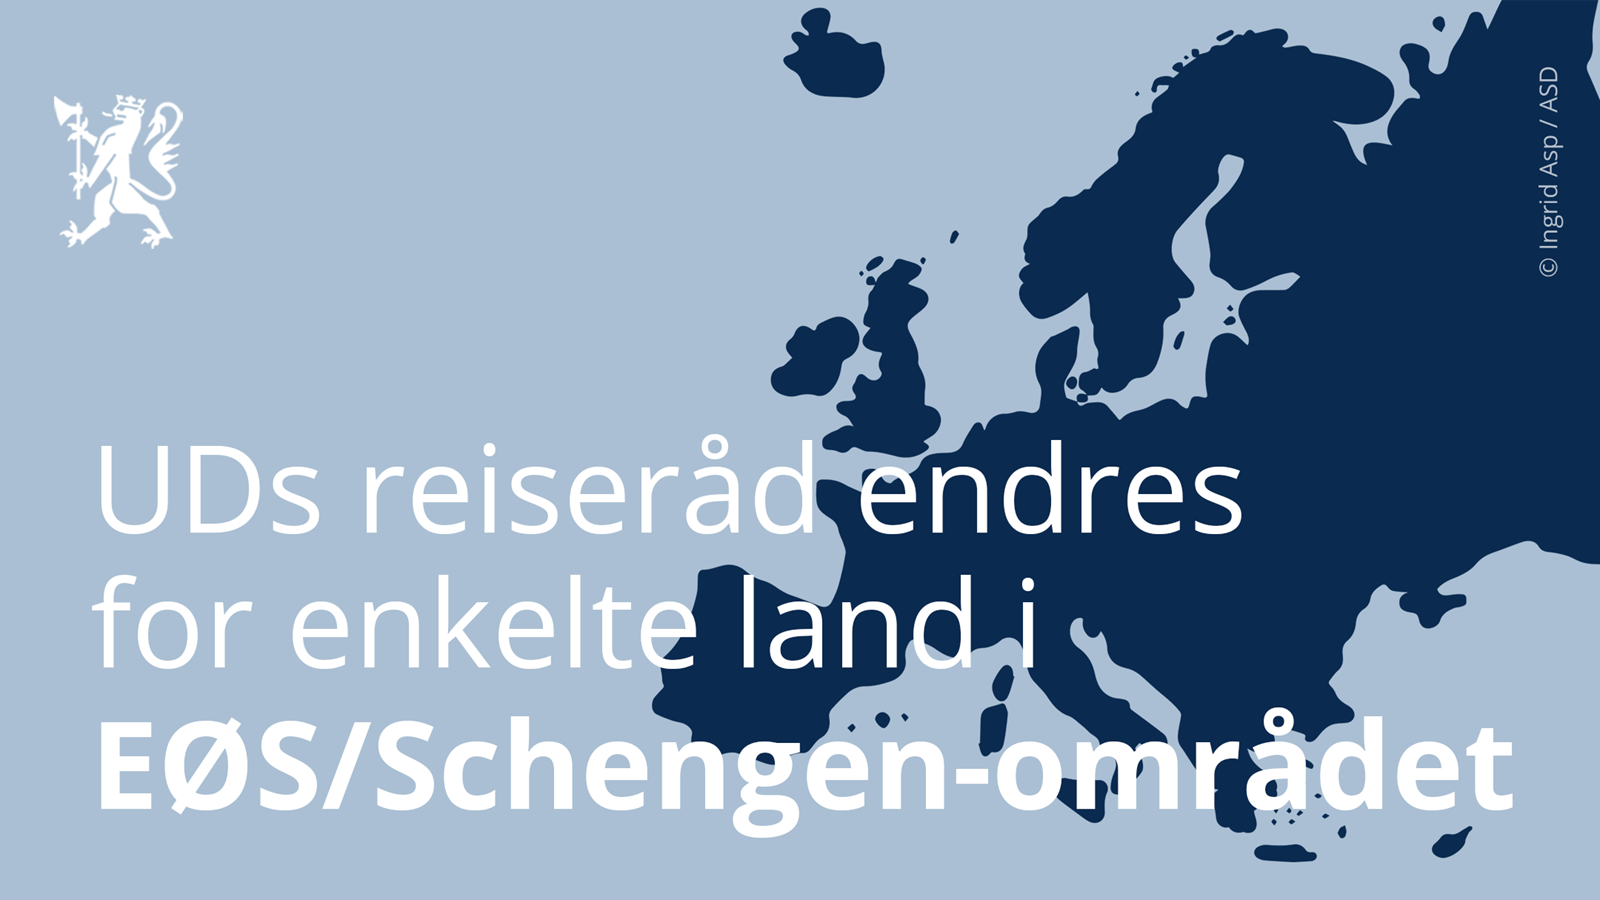 Reiseradet Endres For Enkelte Land I Eos Schengen Omradet Fra 15 Juli Regjeringen No